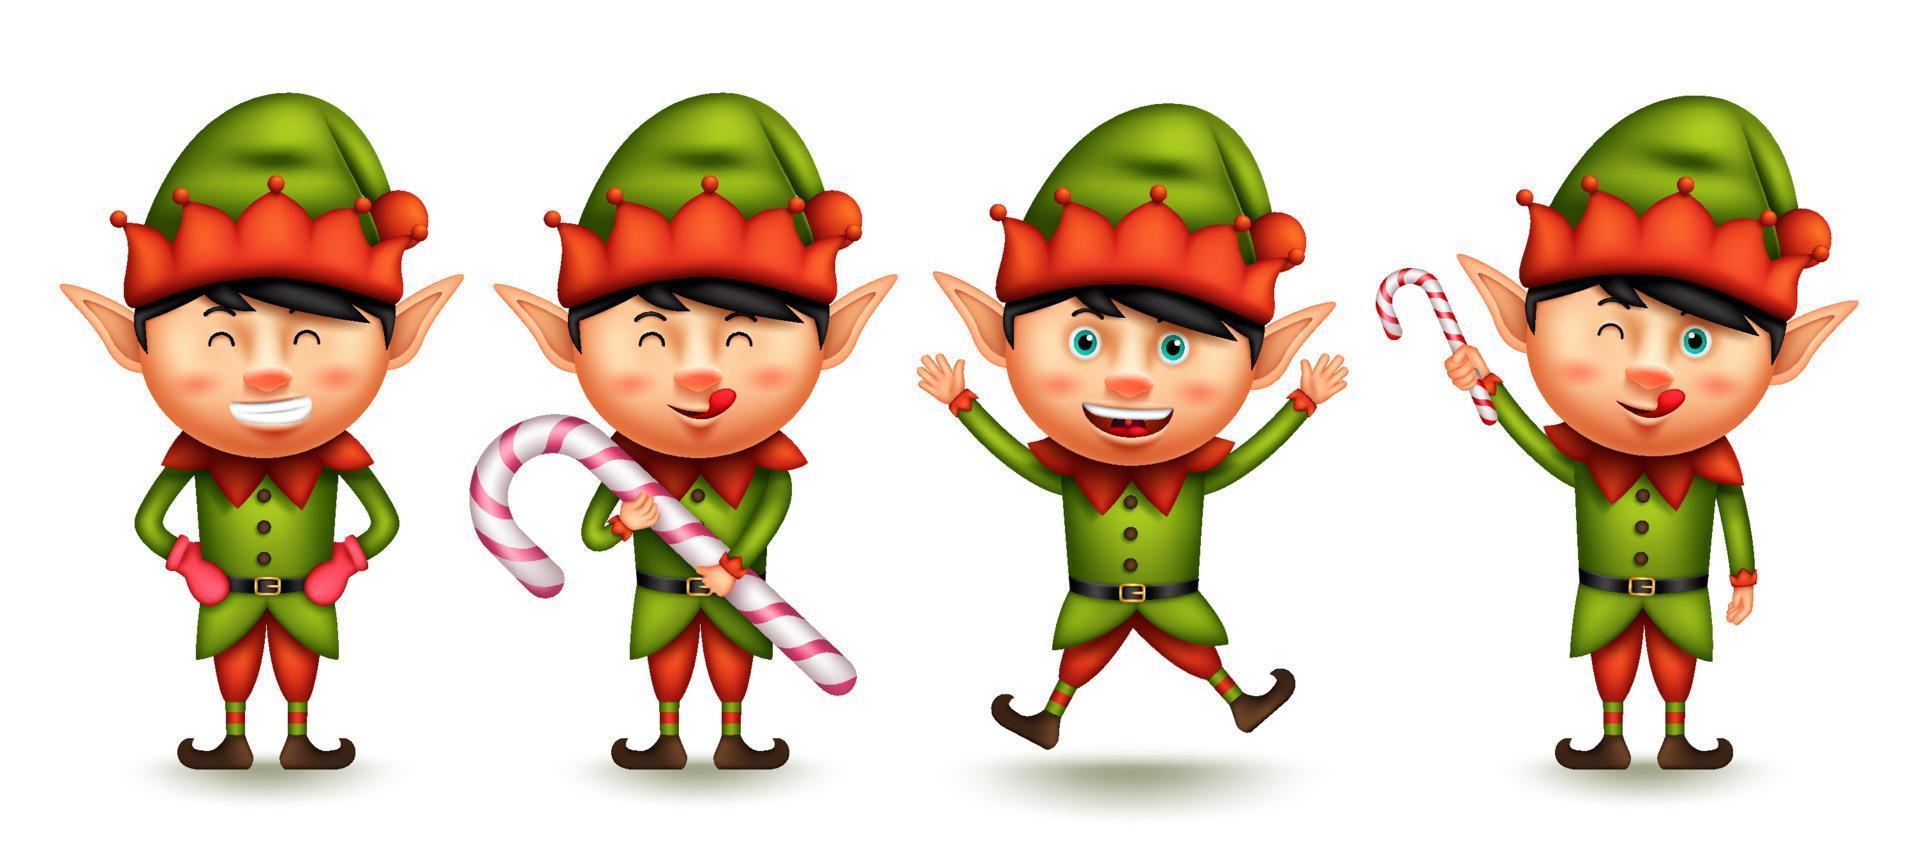 elf jul tecken vektor uppsättning. liten pojke 3d alver karaktärer med leende uttryck i att hoppa och hålla candy cane gester för xmas grafisk design samling. vektor illustration.